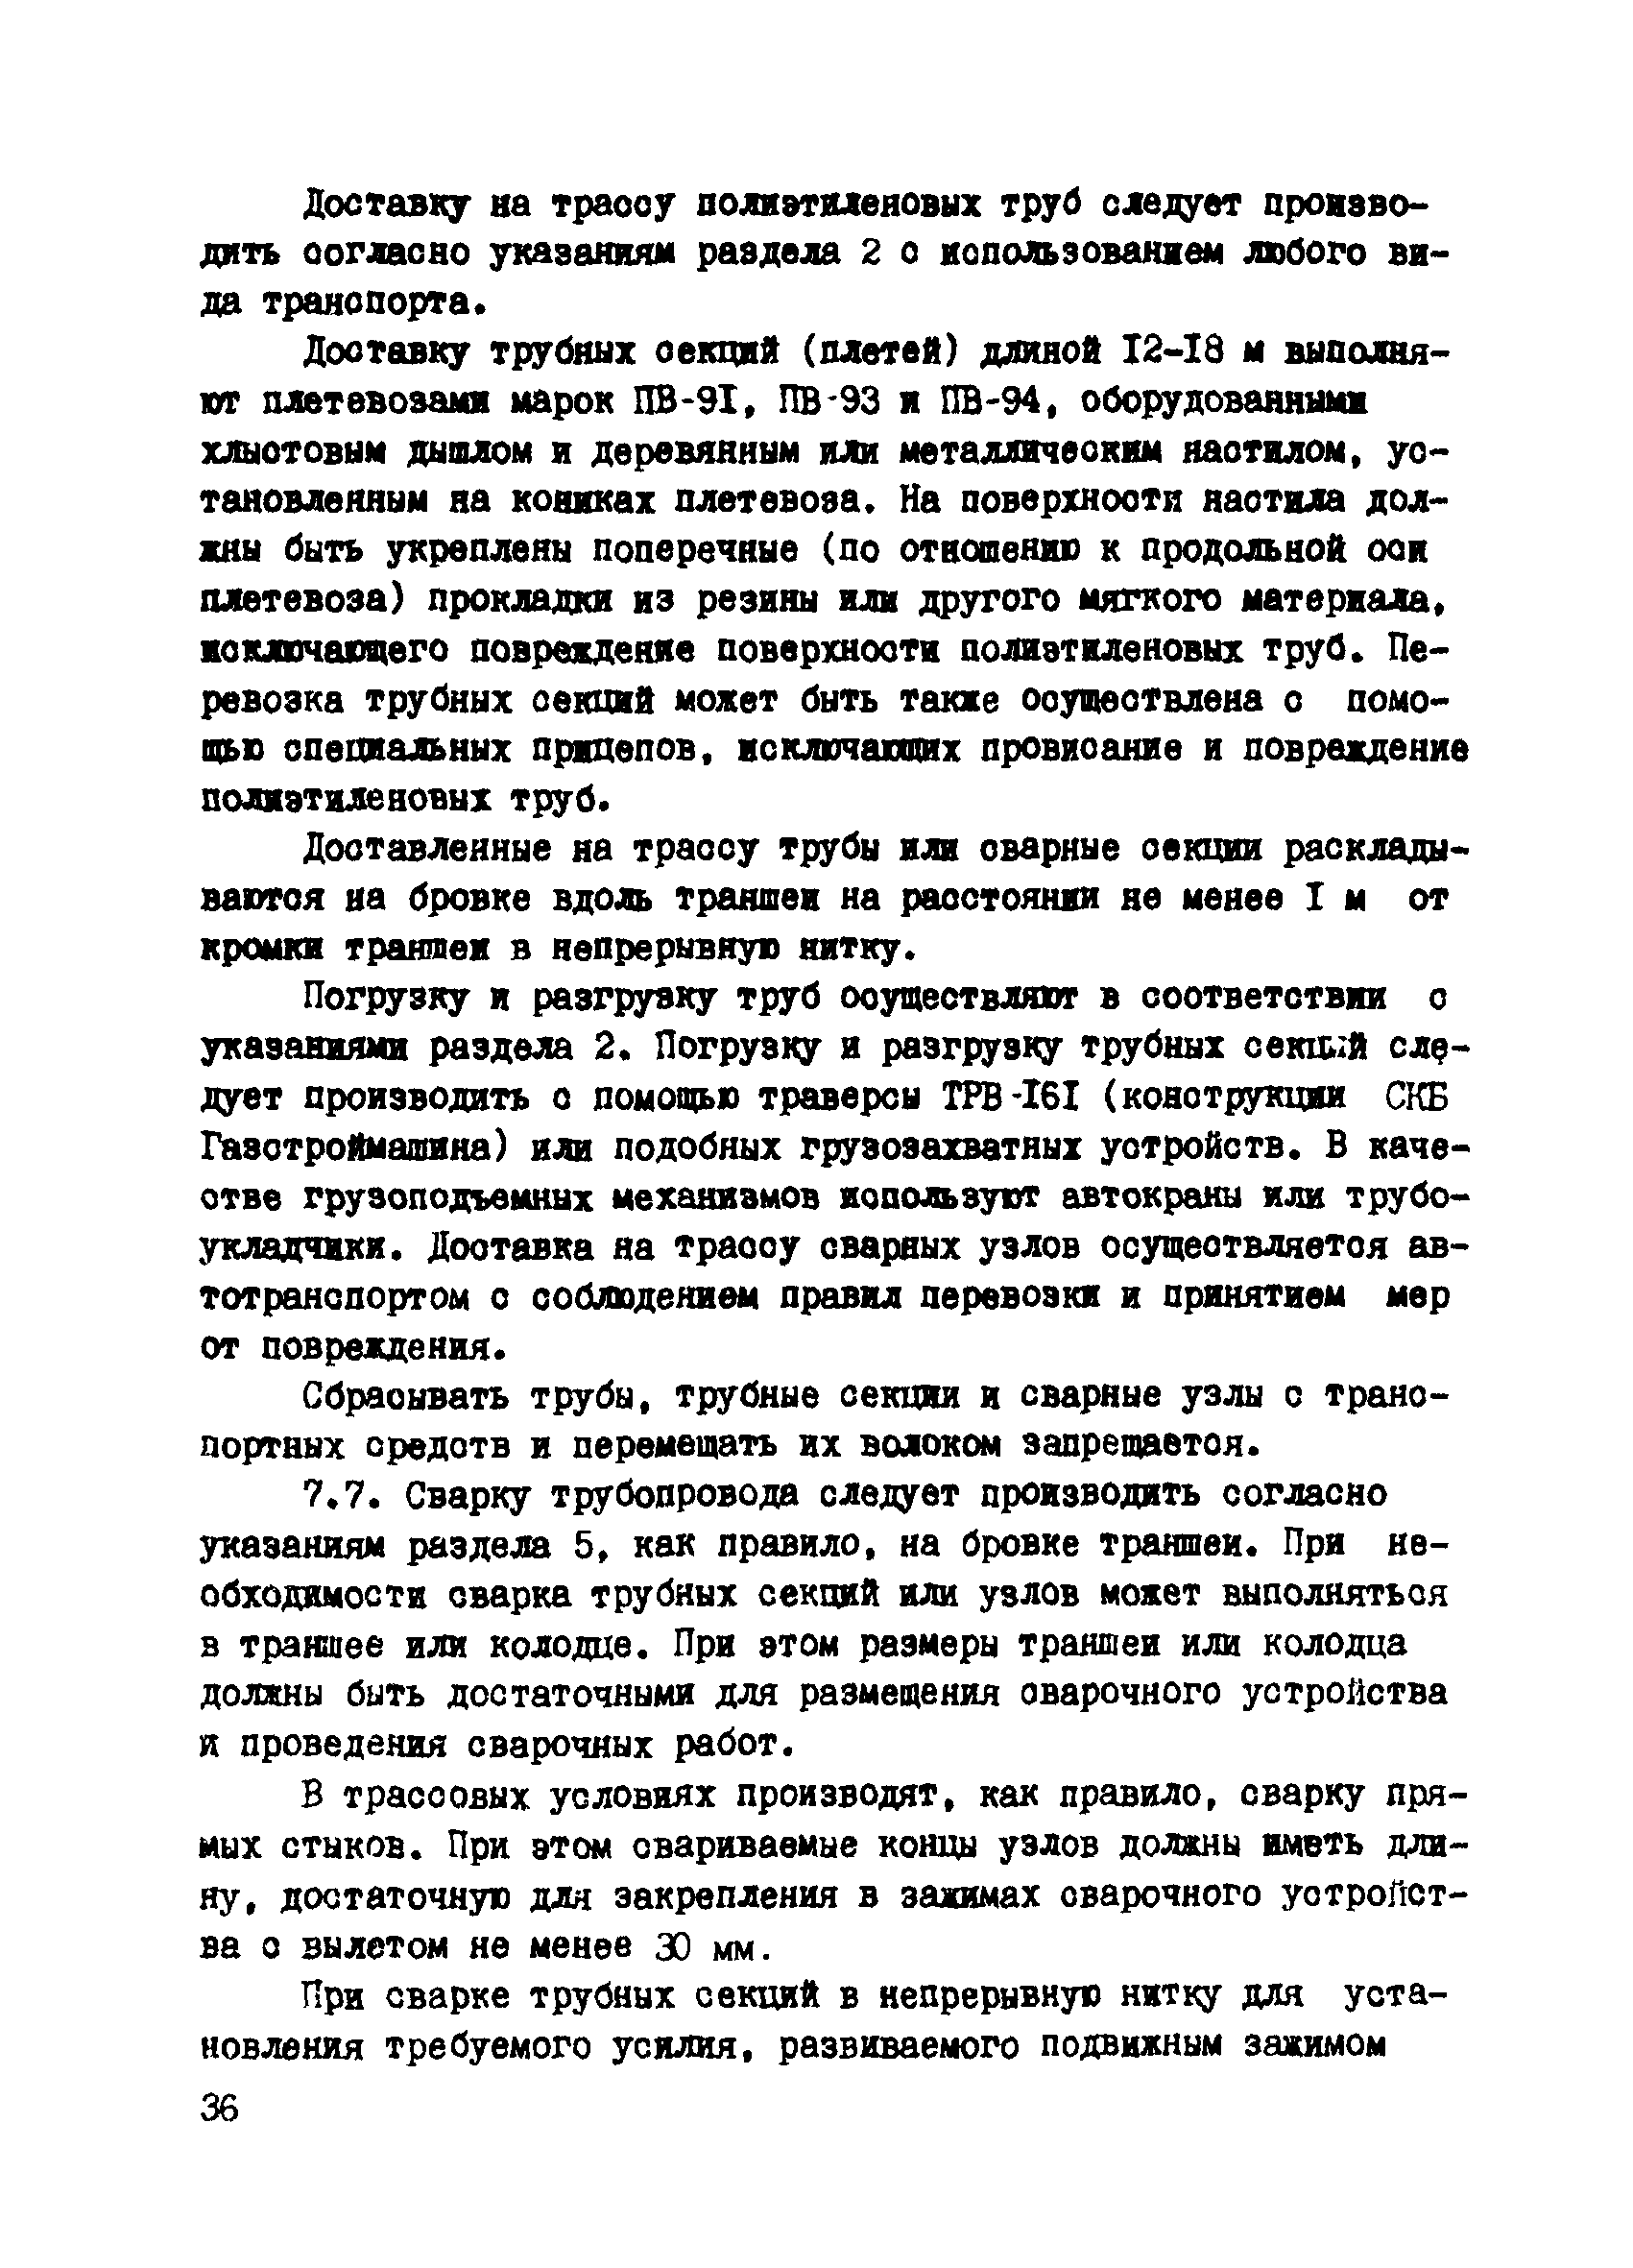 ВСН 190-85